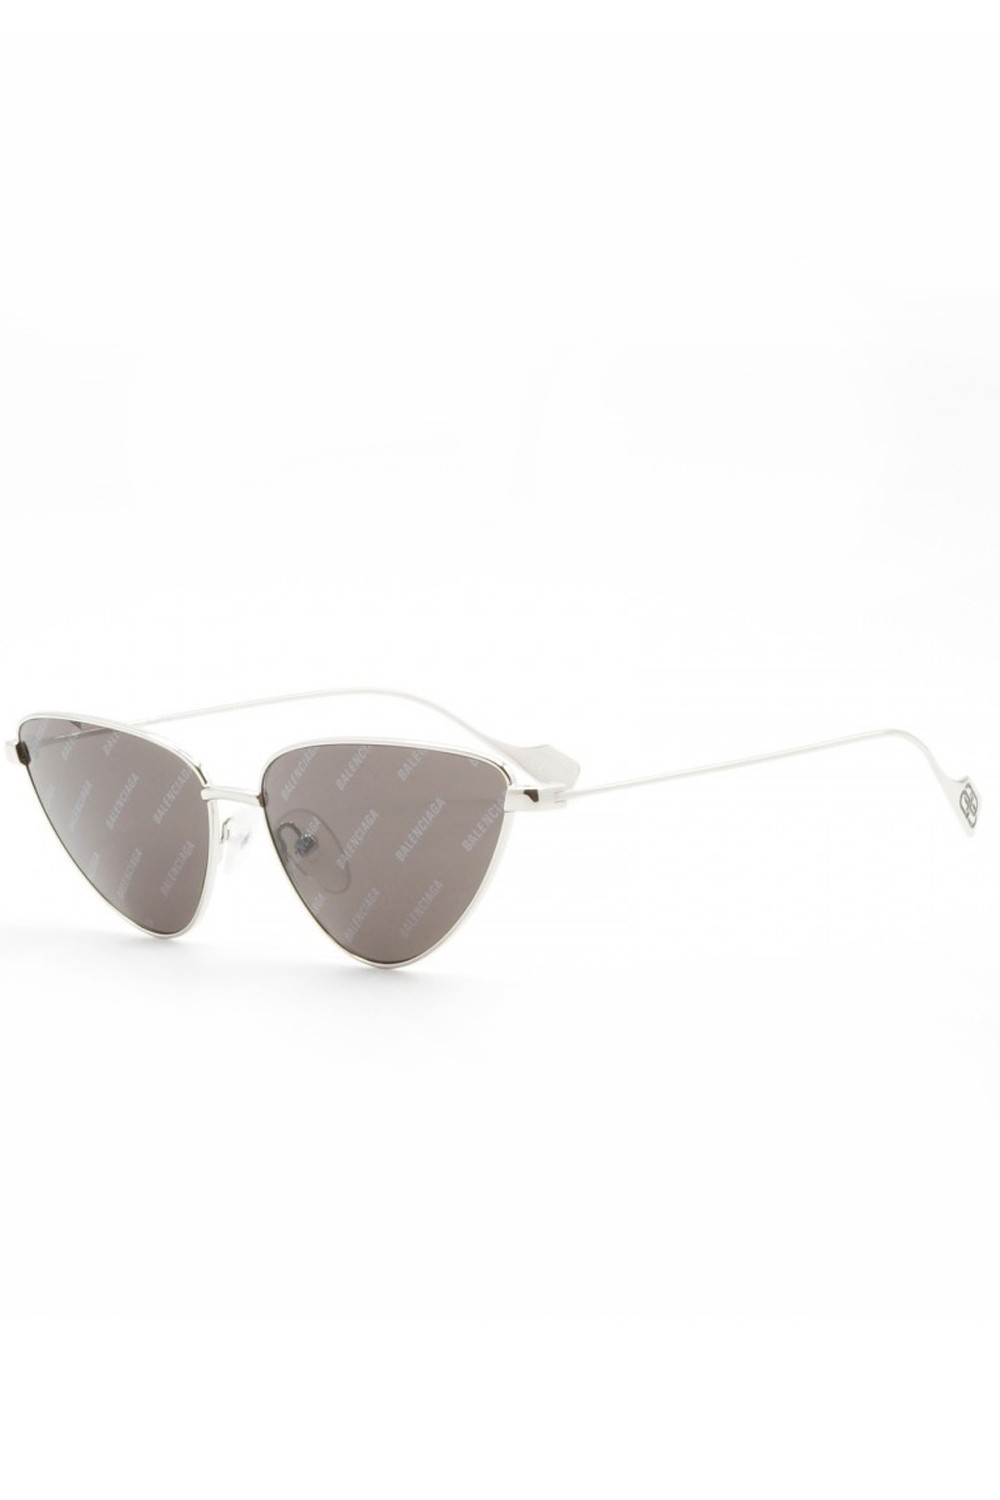 Balenciaga - Occhiali da sole cat eye in metallo per donna silver - BB0086S 005